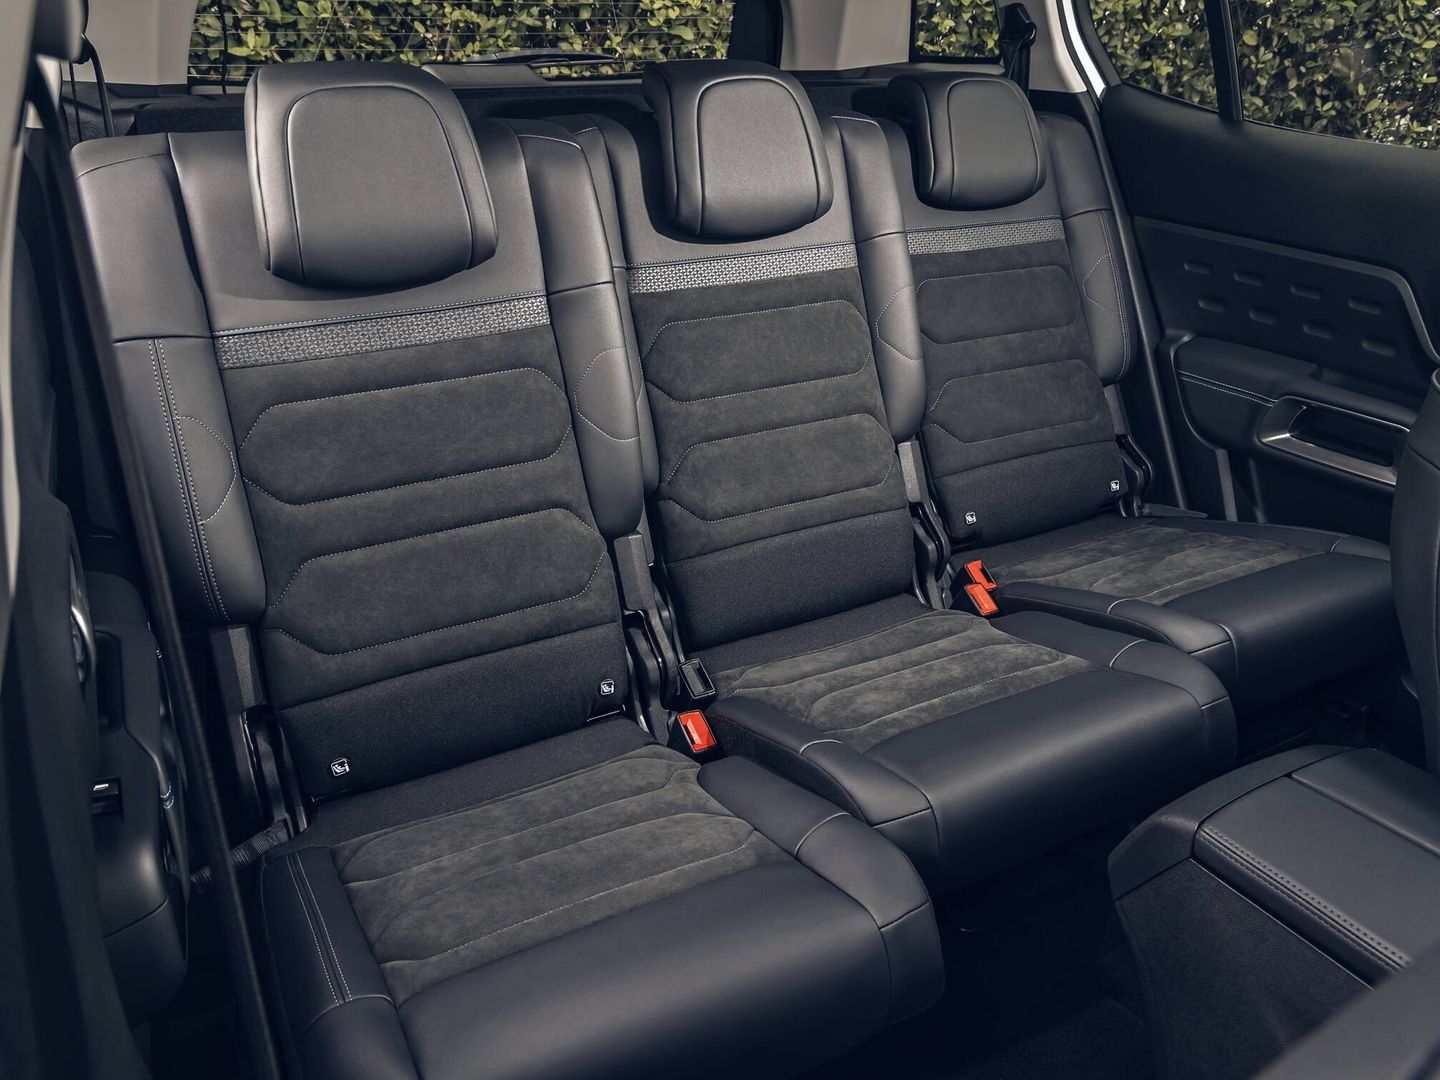 Sin cambios en la estupenda modularidad interior del C5 Aircross, uno de los SUV más prácticos.